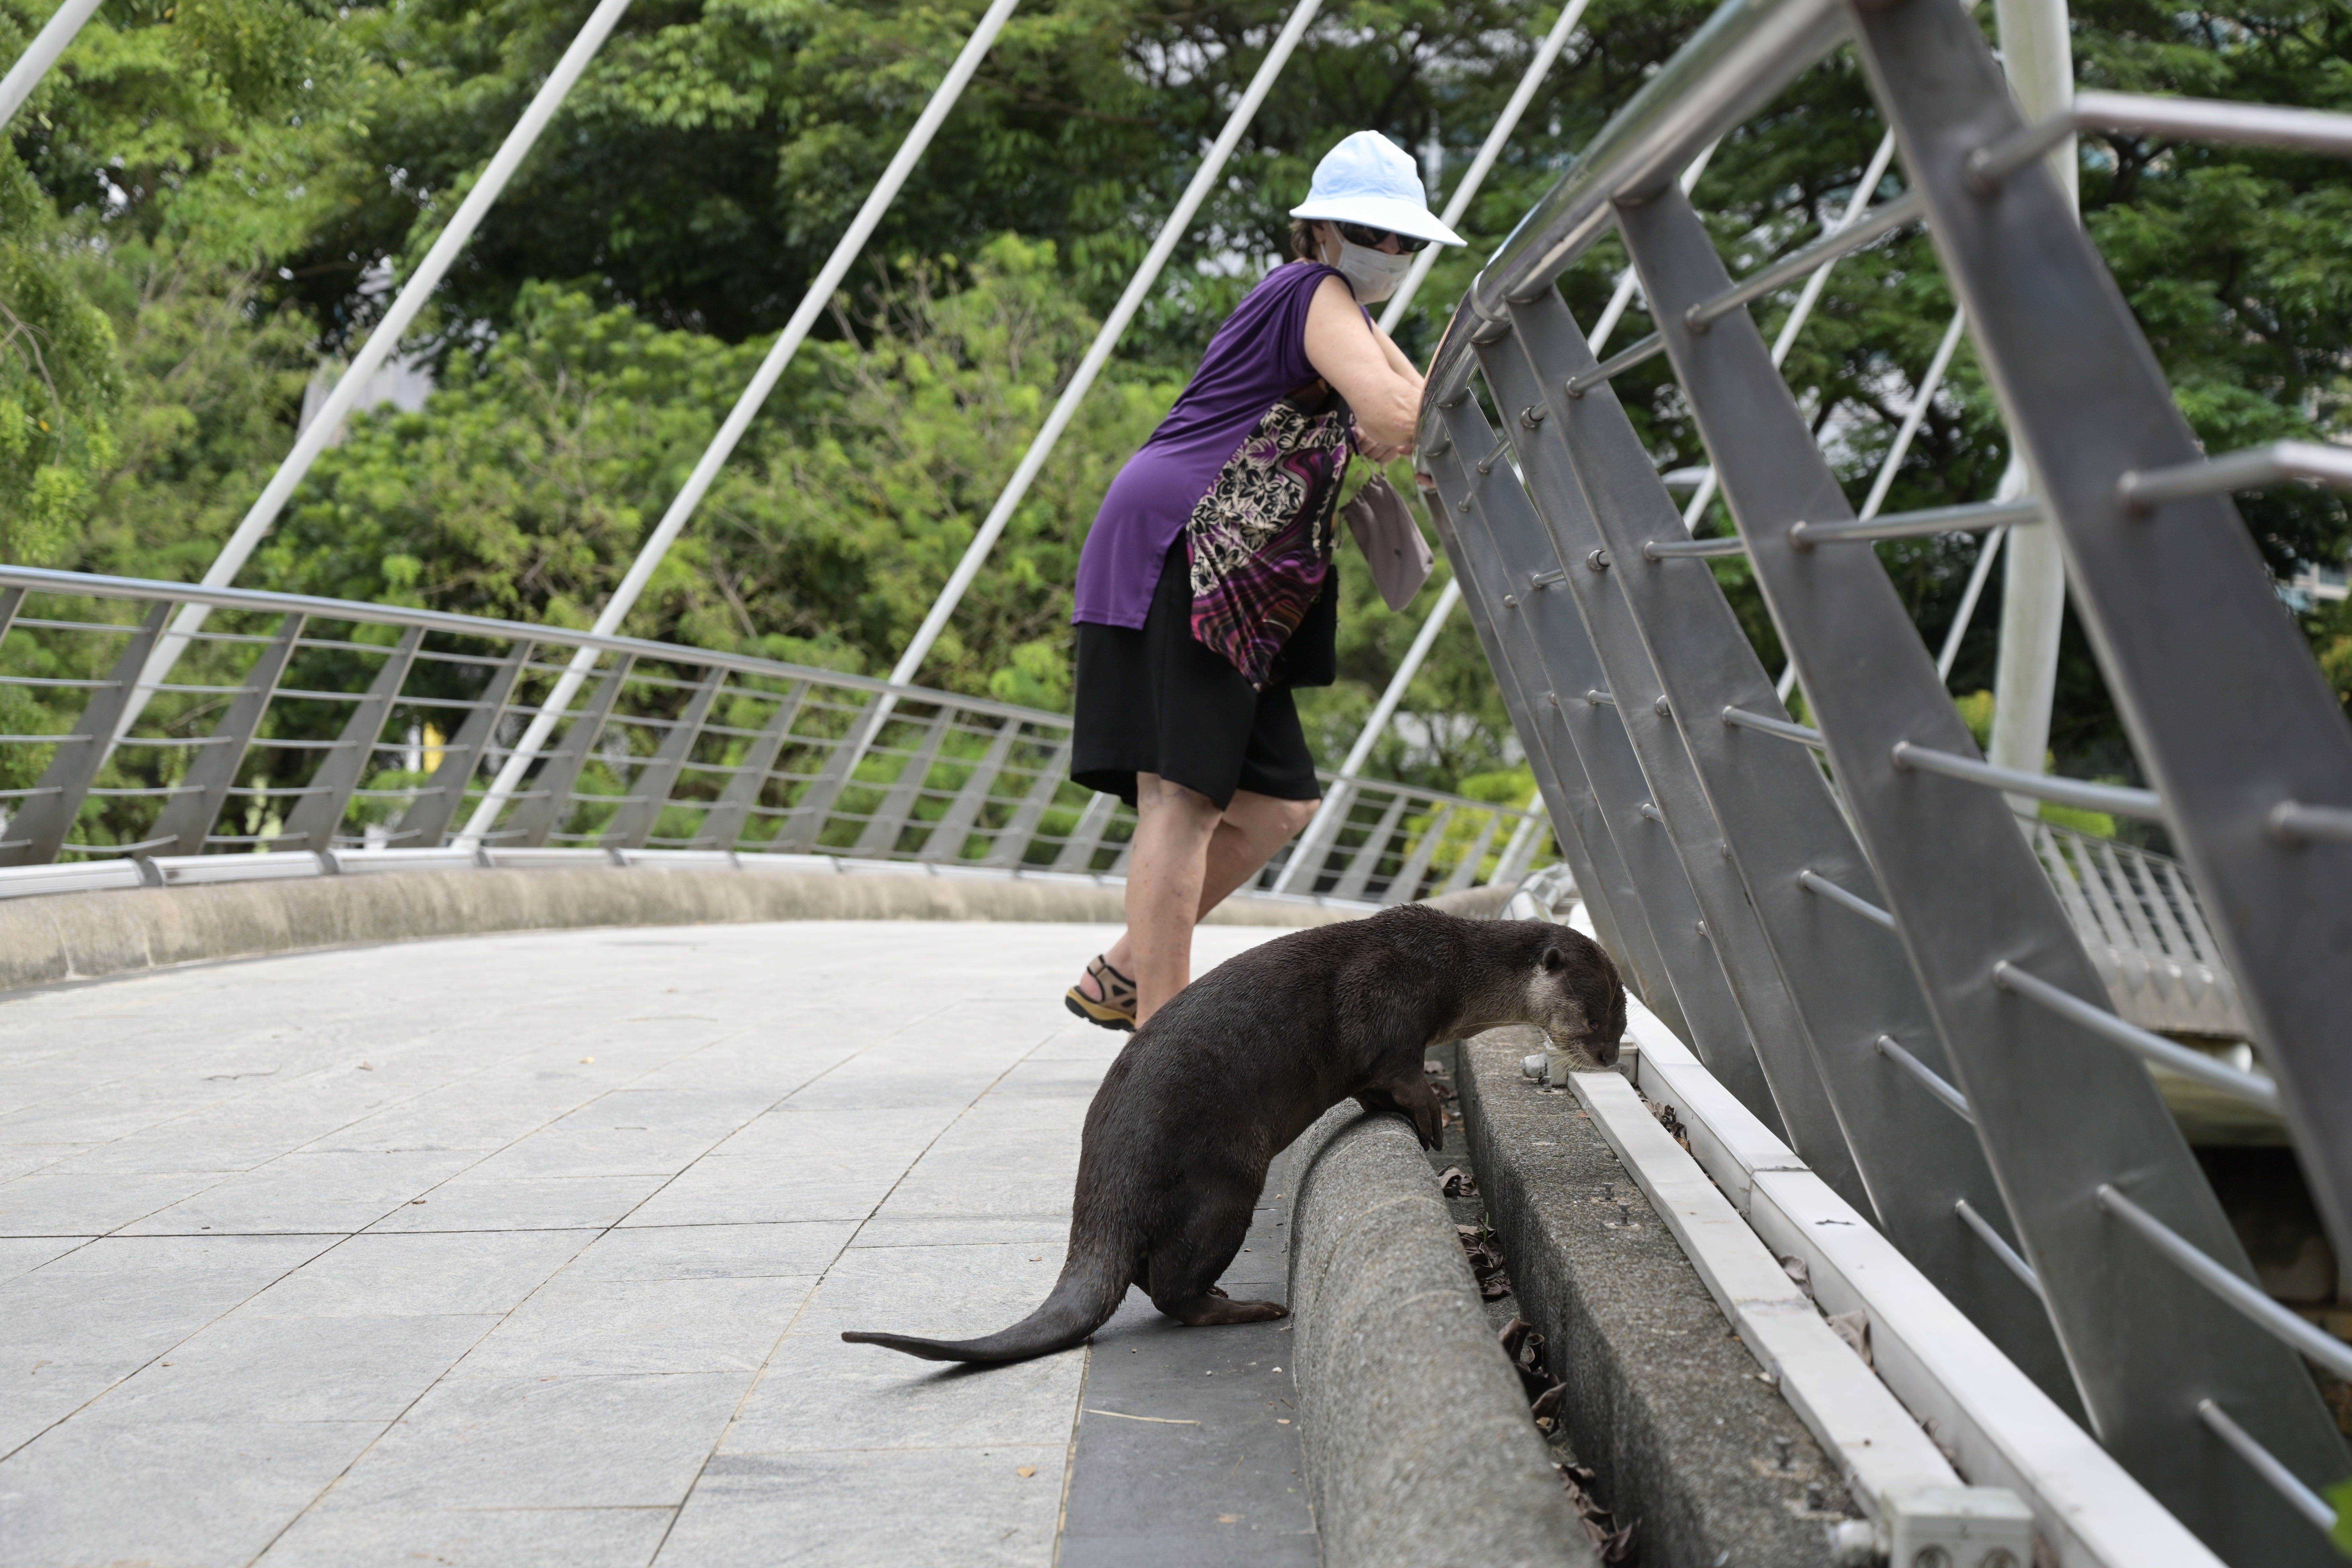 Otter späht über Brücke mit Frau im Hintergrund